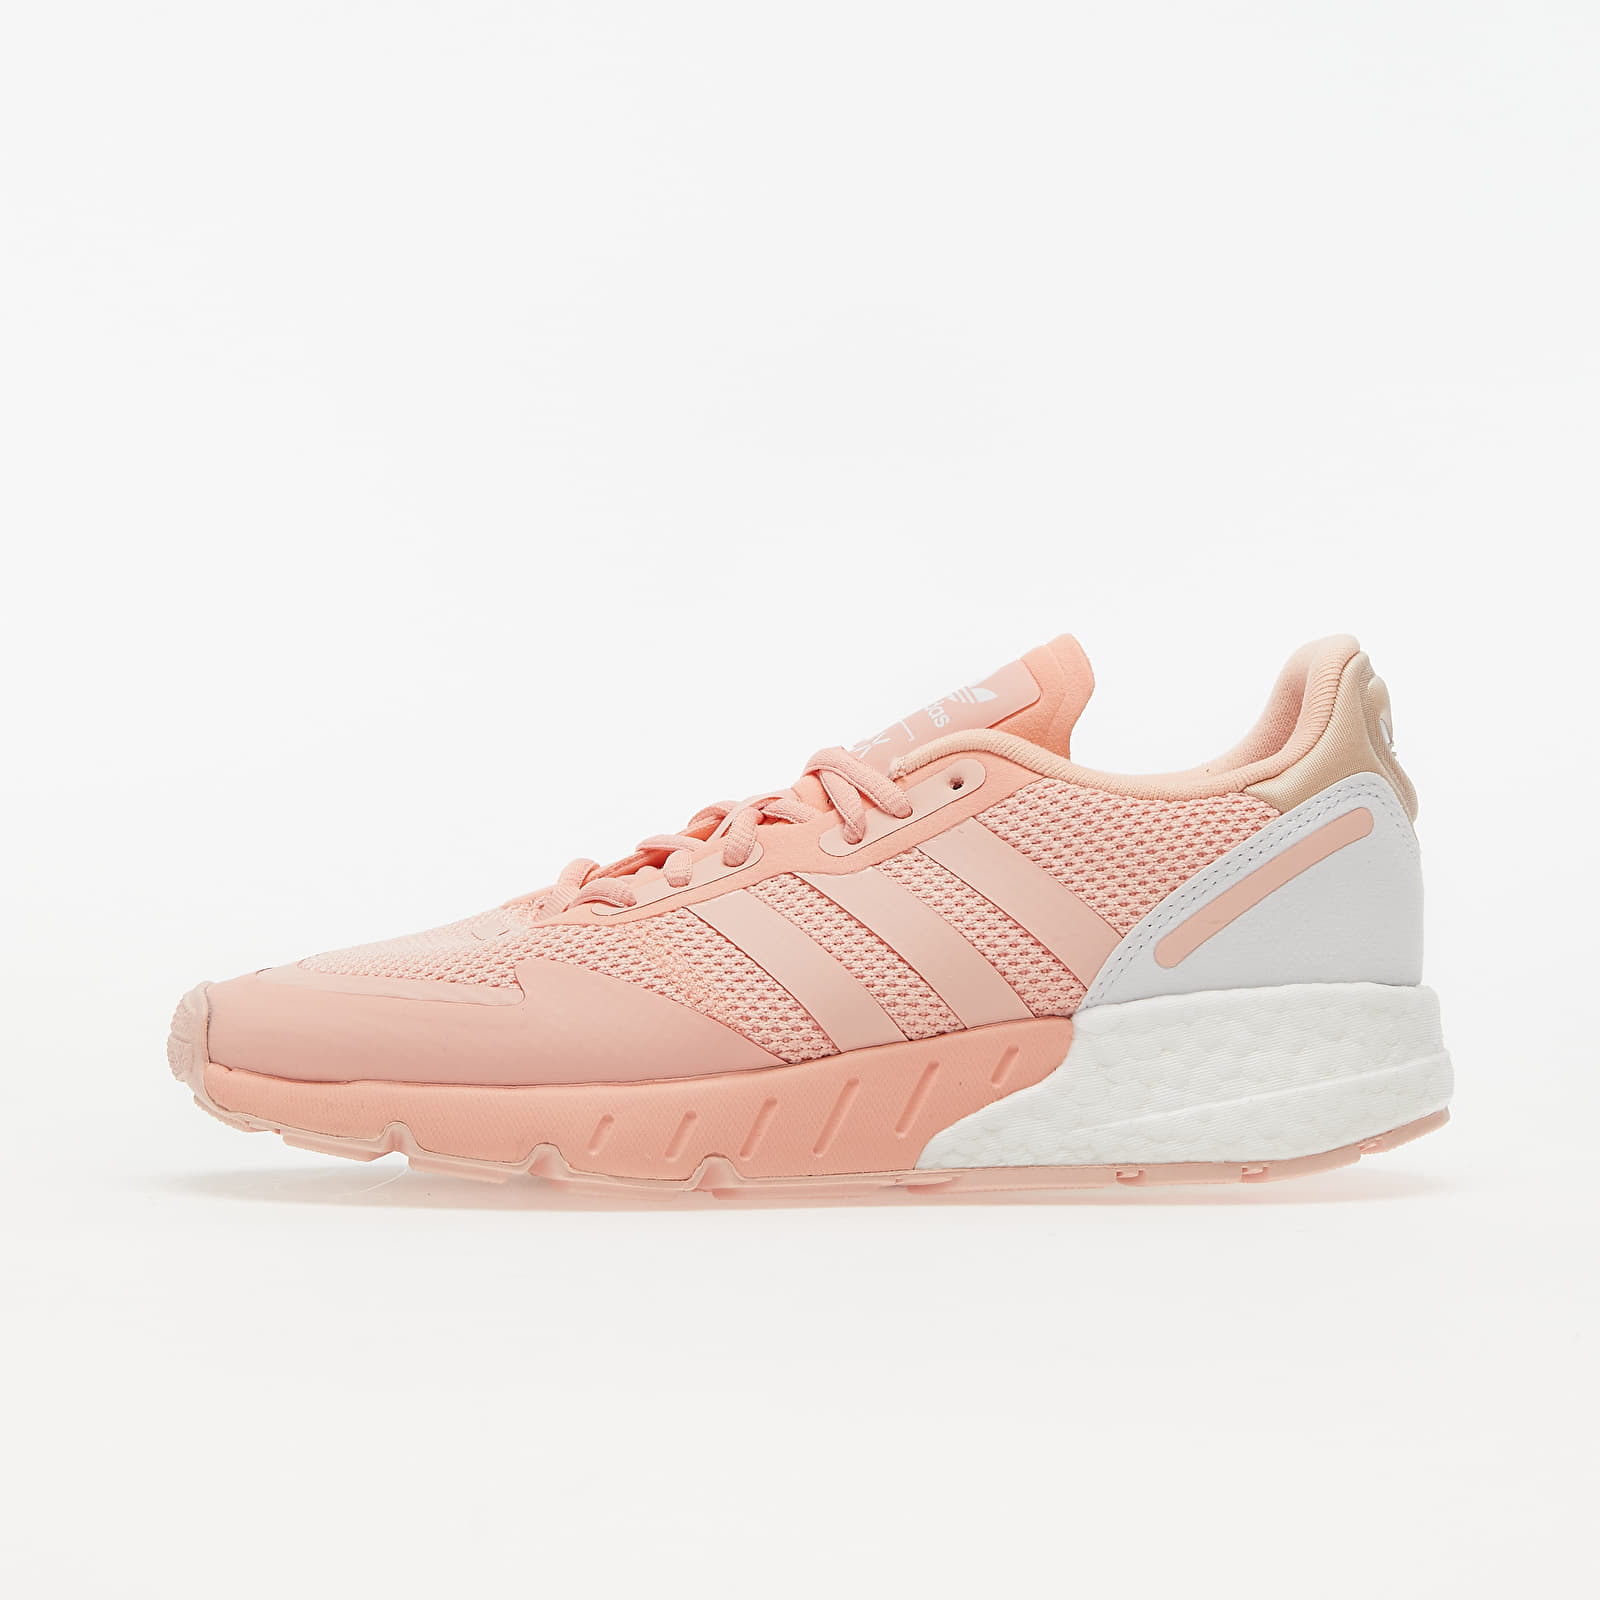 Damen Sneaker und Schuhe adidas ZX 1K Boost W Glow Pink/ Vapour Pink/ Ftw White